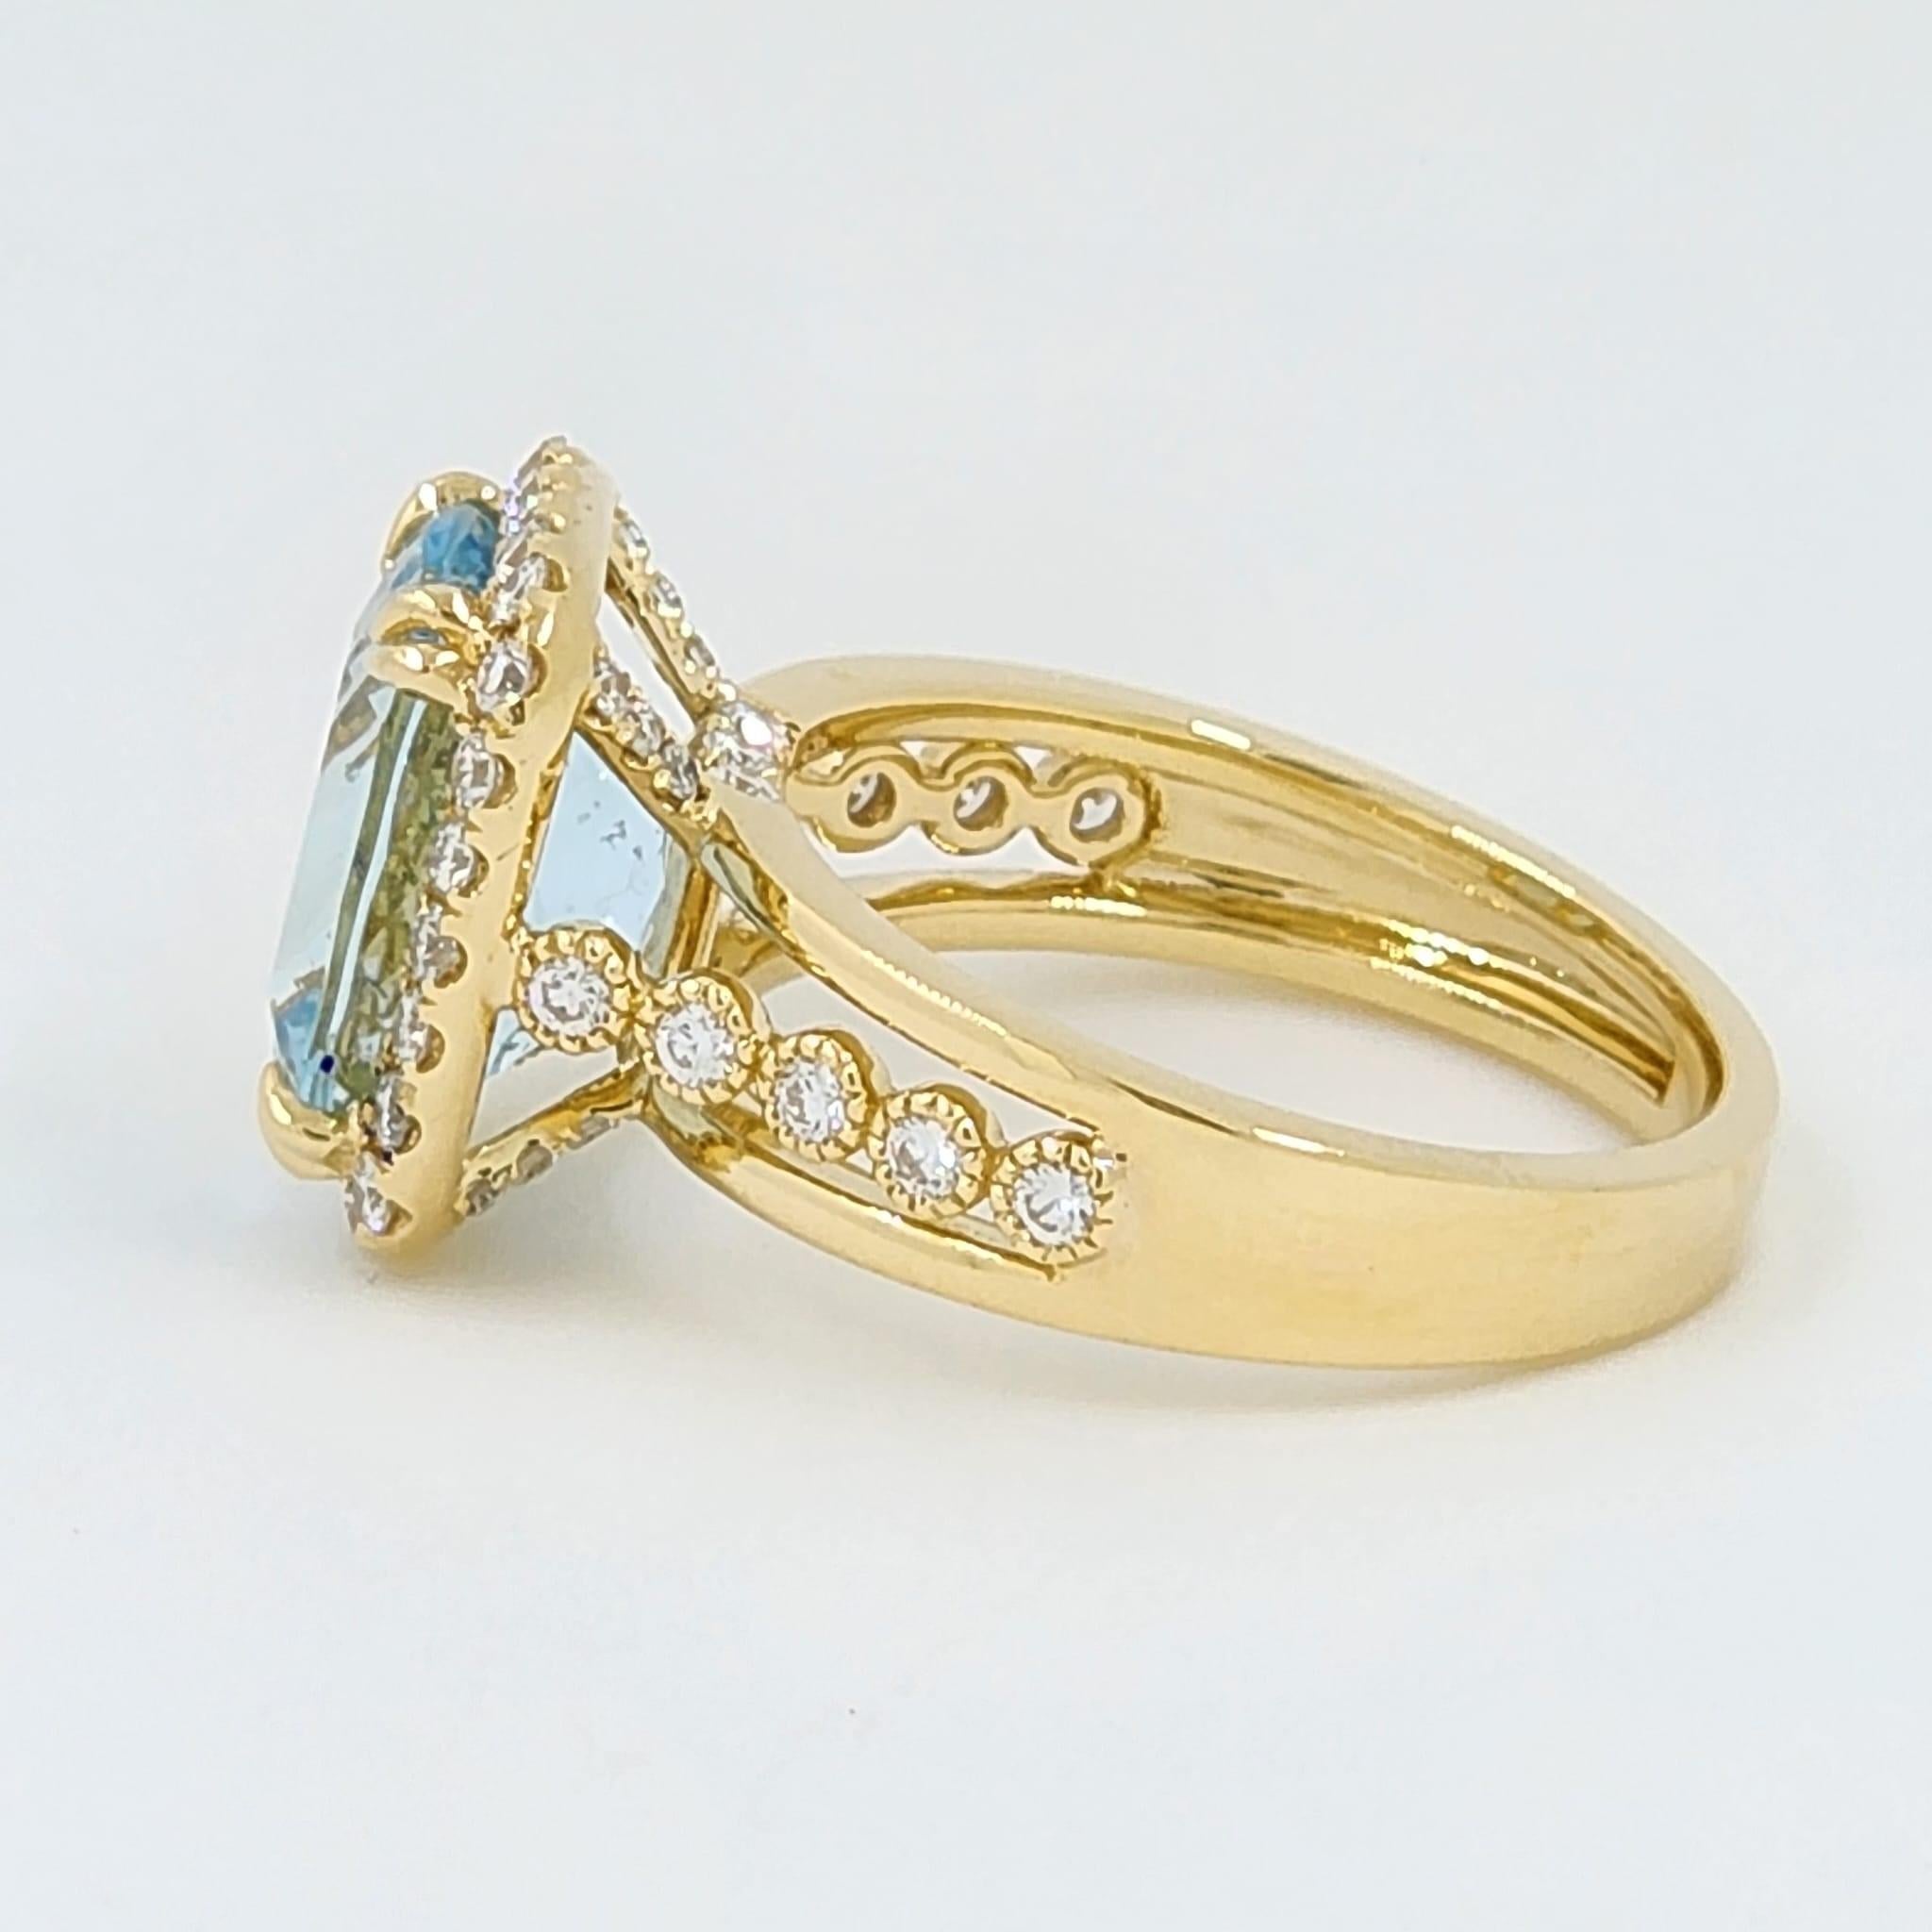 Modern 3.87 Carat Aquamarine Diamond Ring in 18 Karat Yellow Gold